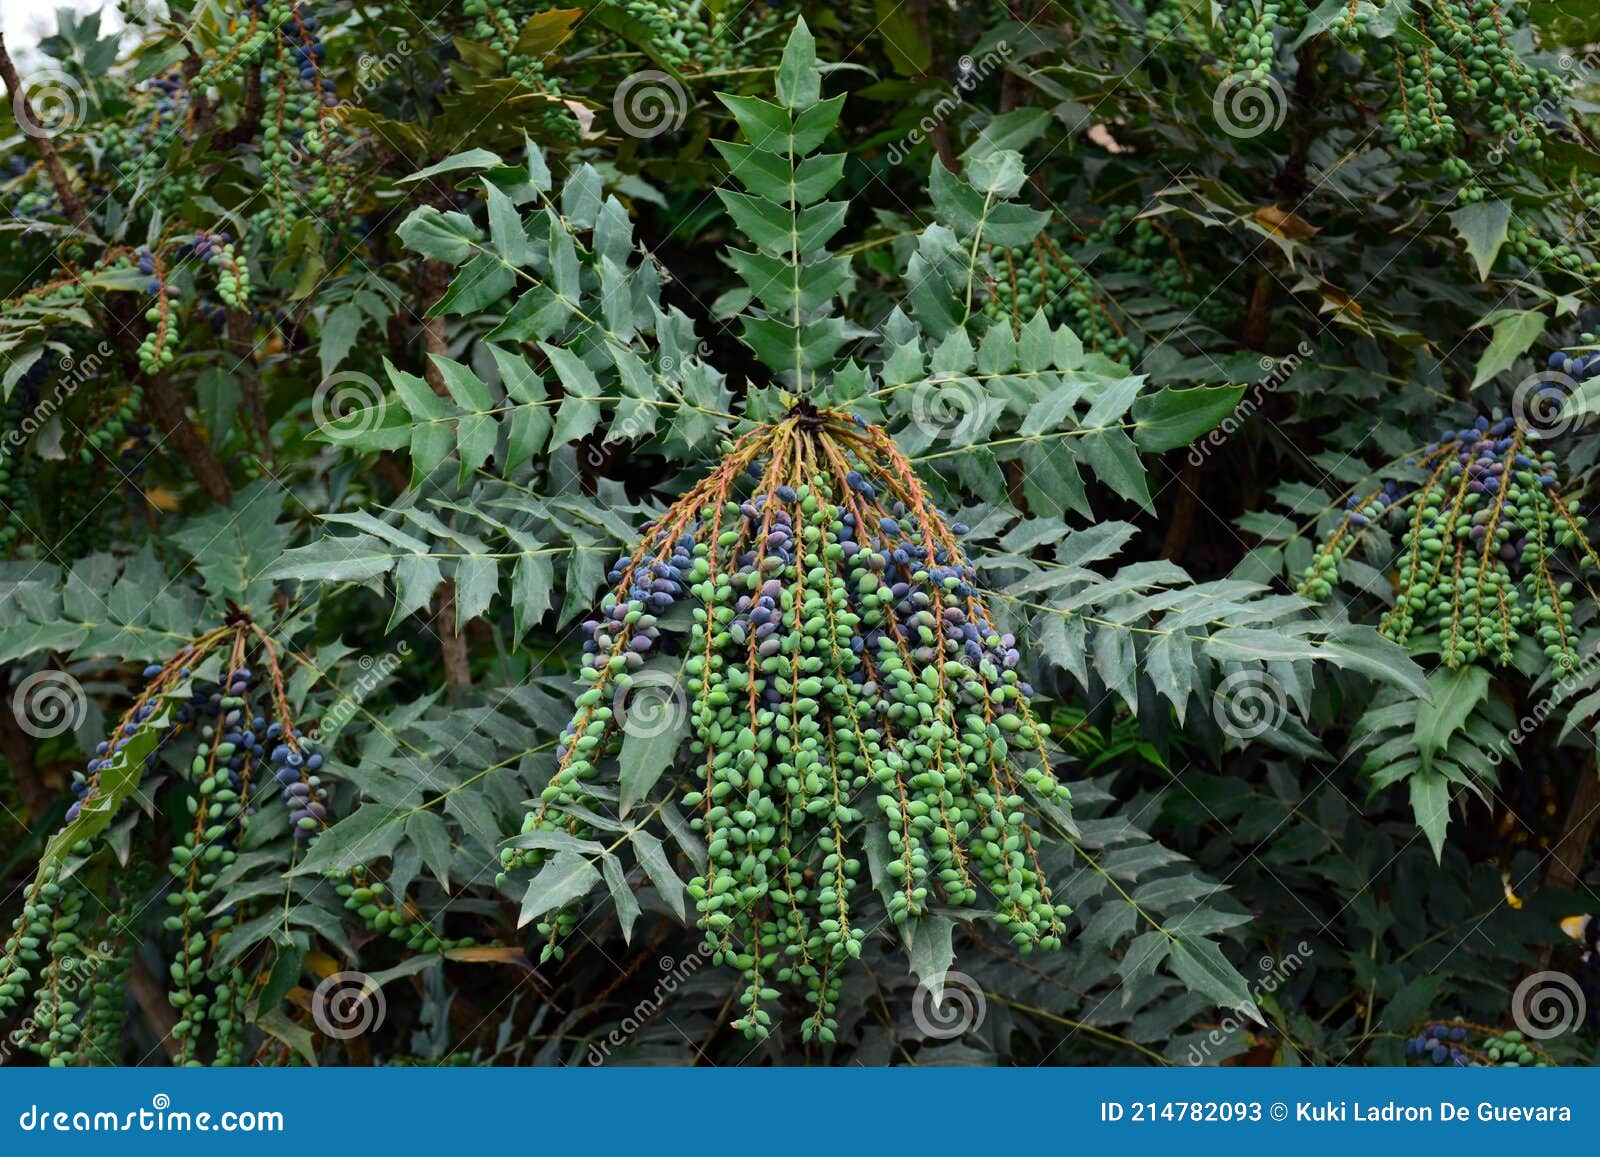 berberis aquifolium fruits